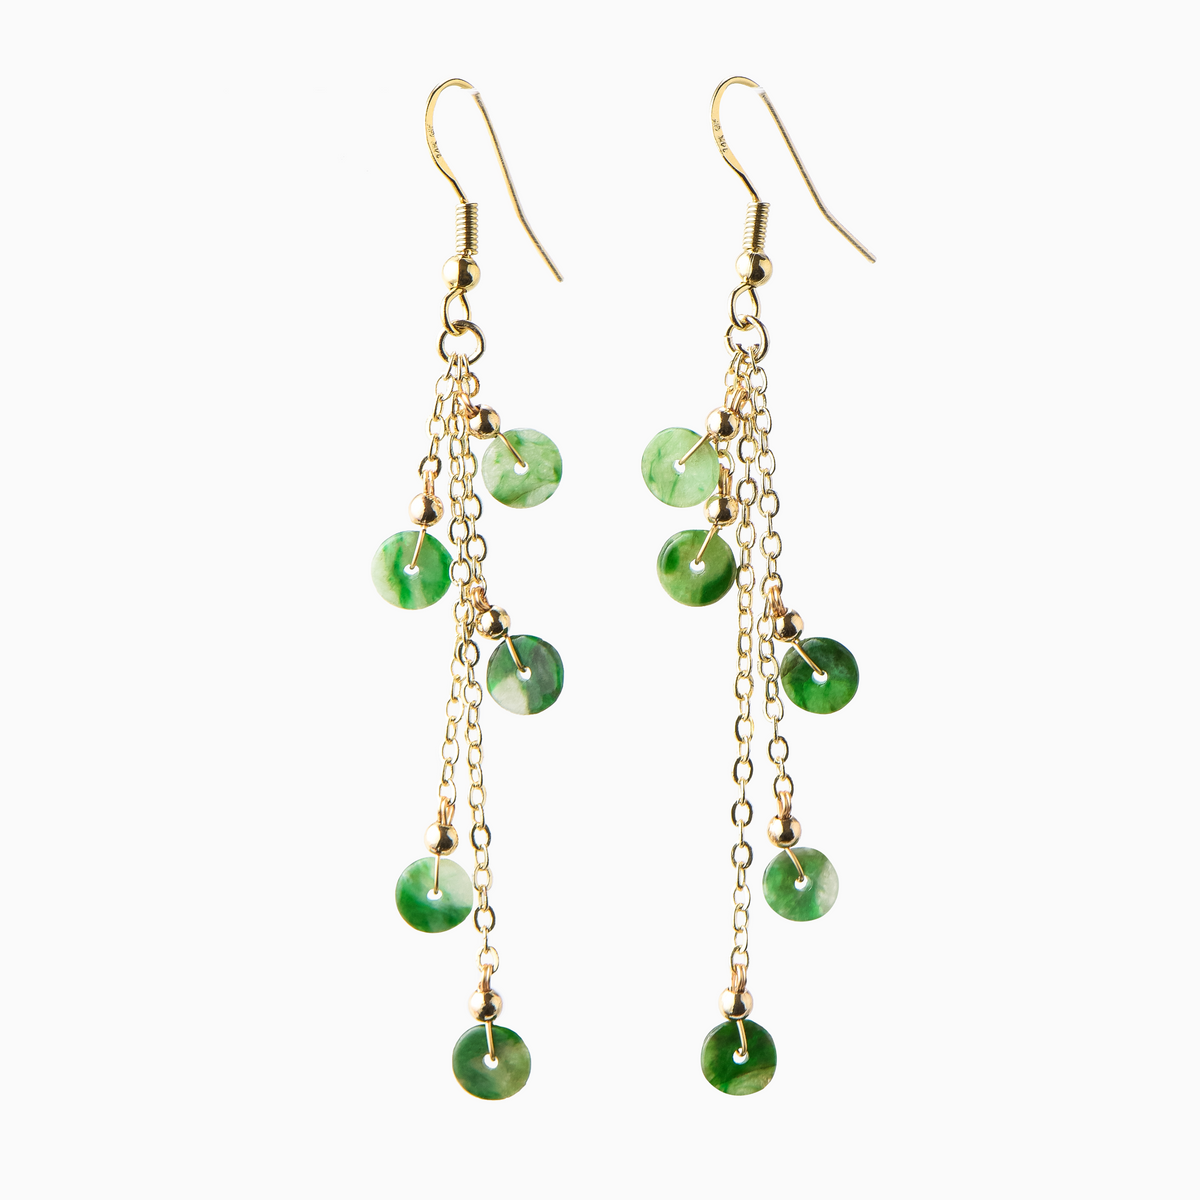 Green Jadeite Earrings with Tassels